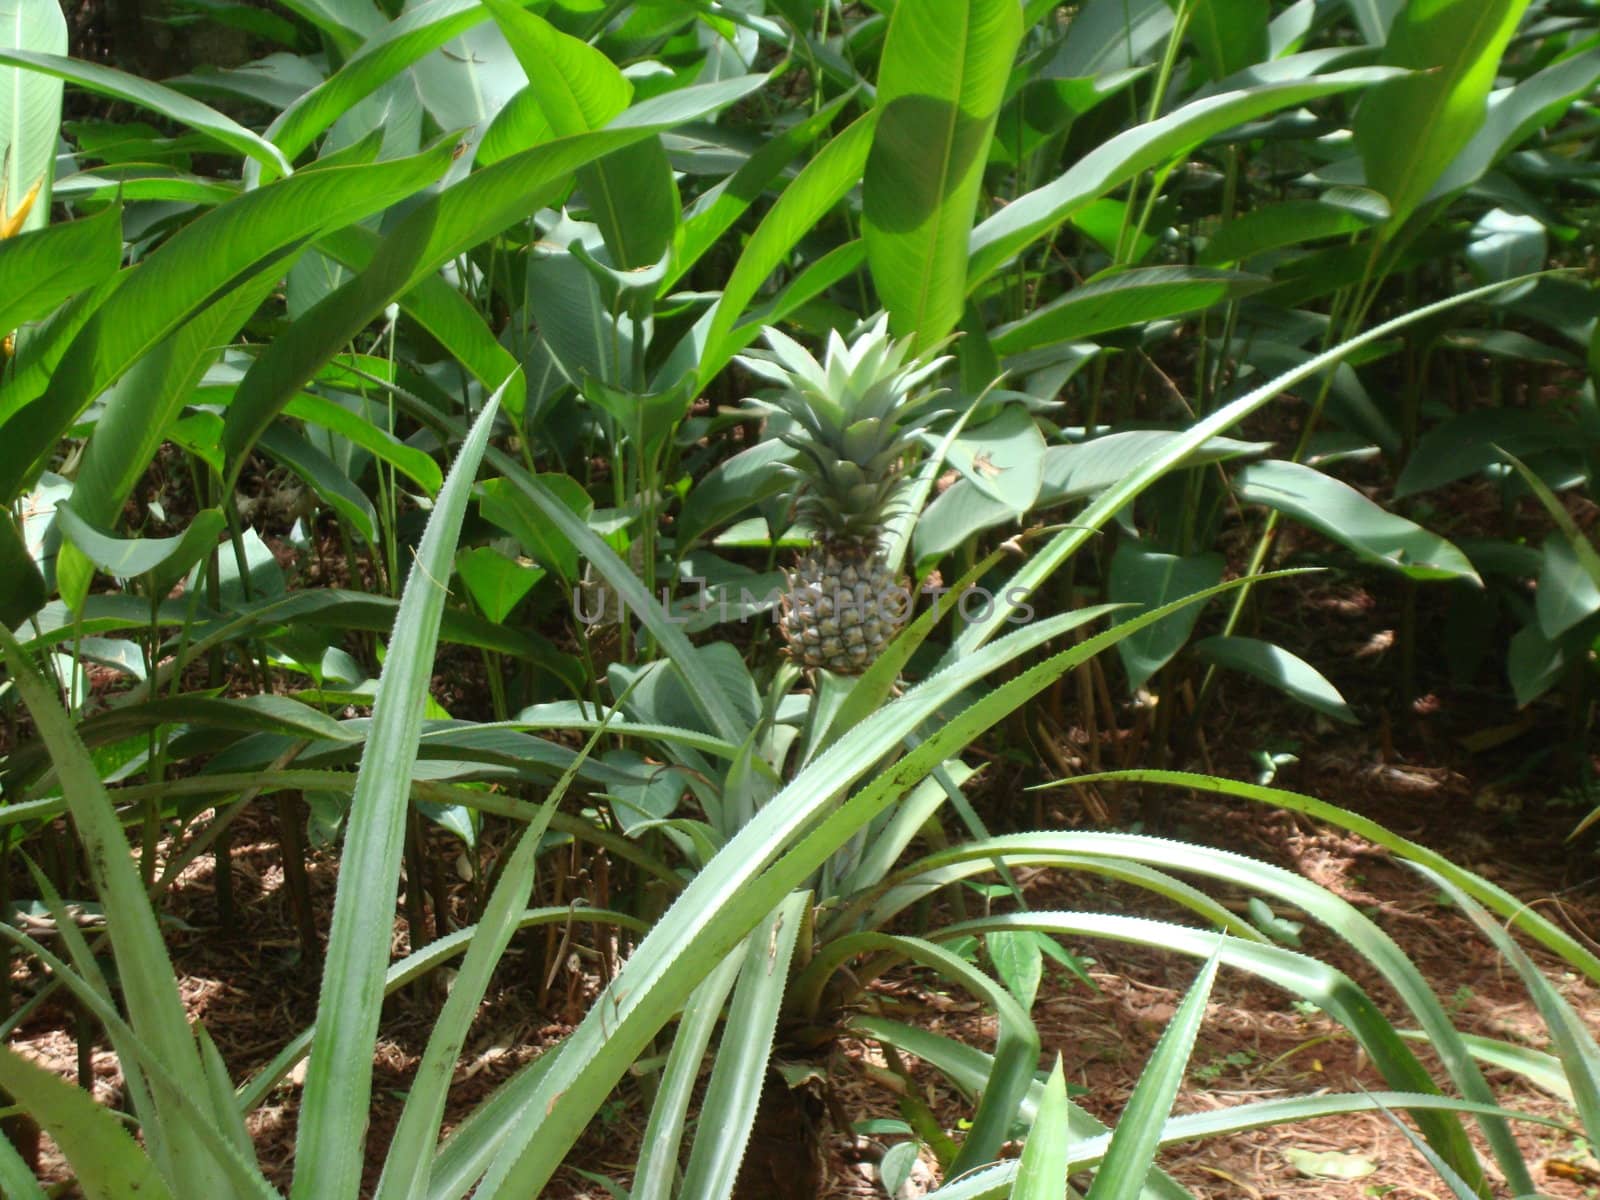 Pineapple grows on land, long, green sheet